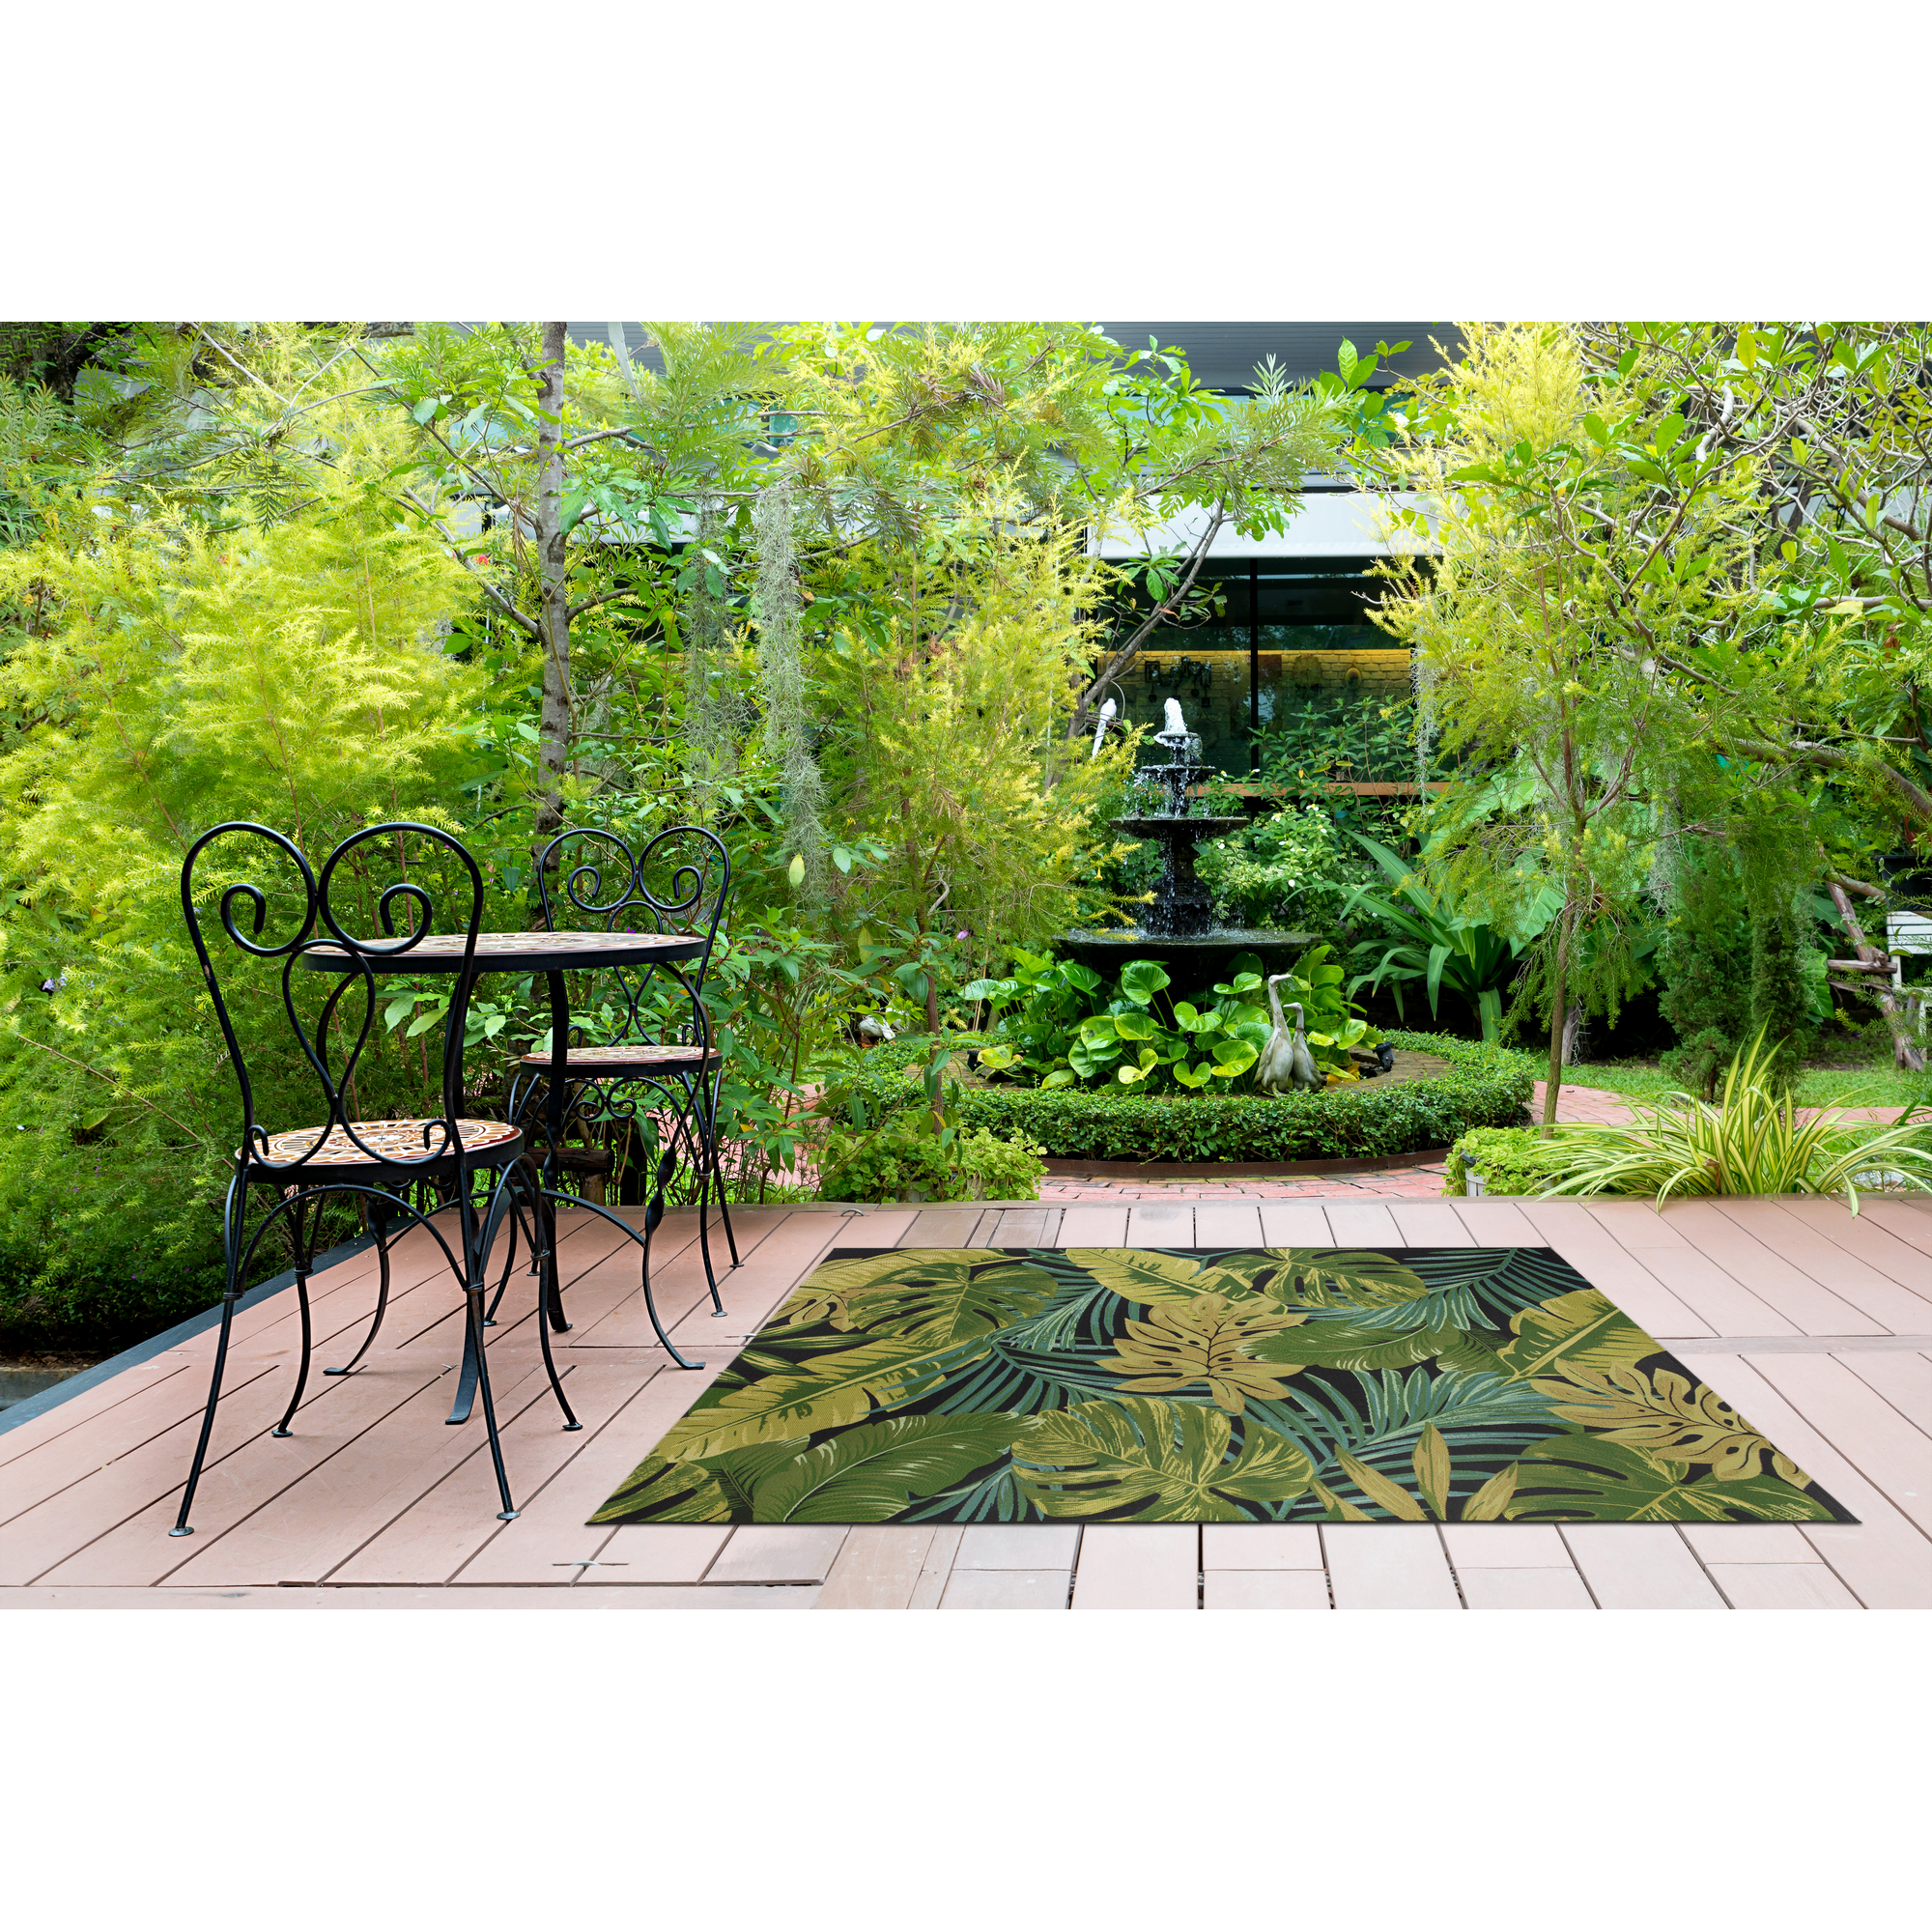 Teppich 'Rosella' schwarz/grün 123 x 180 cm + product picture